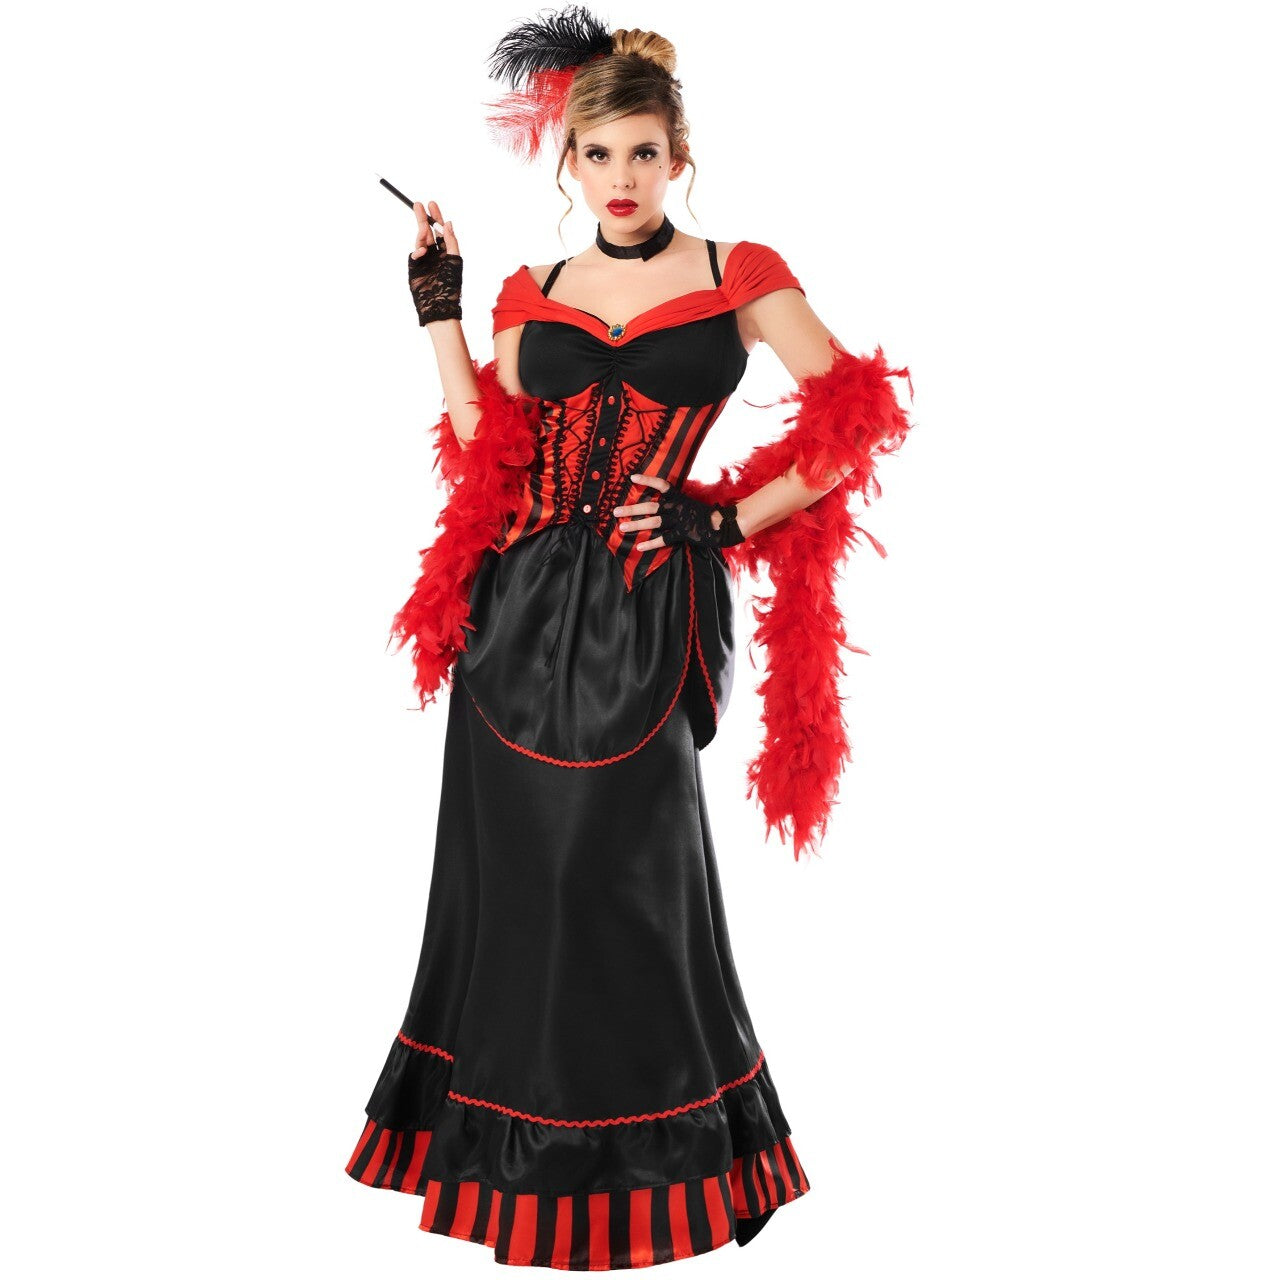 Costume cabaret burlesque femme - Déguisement adulte femme